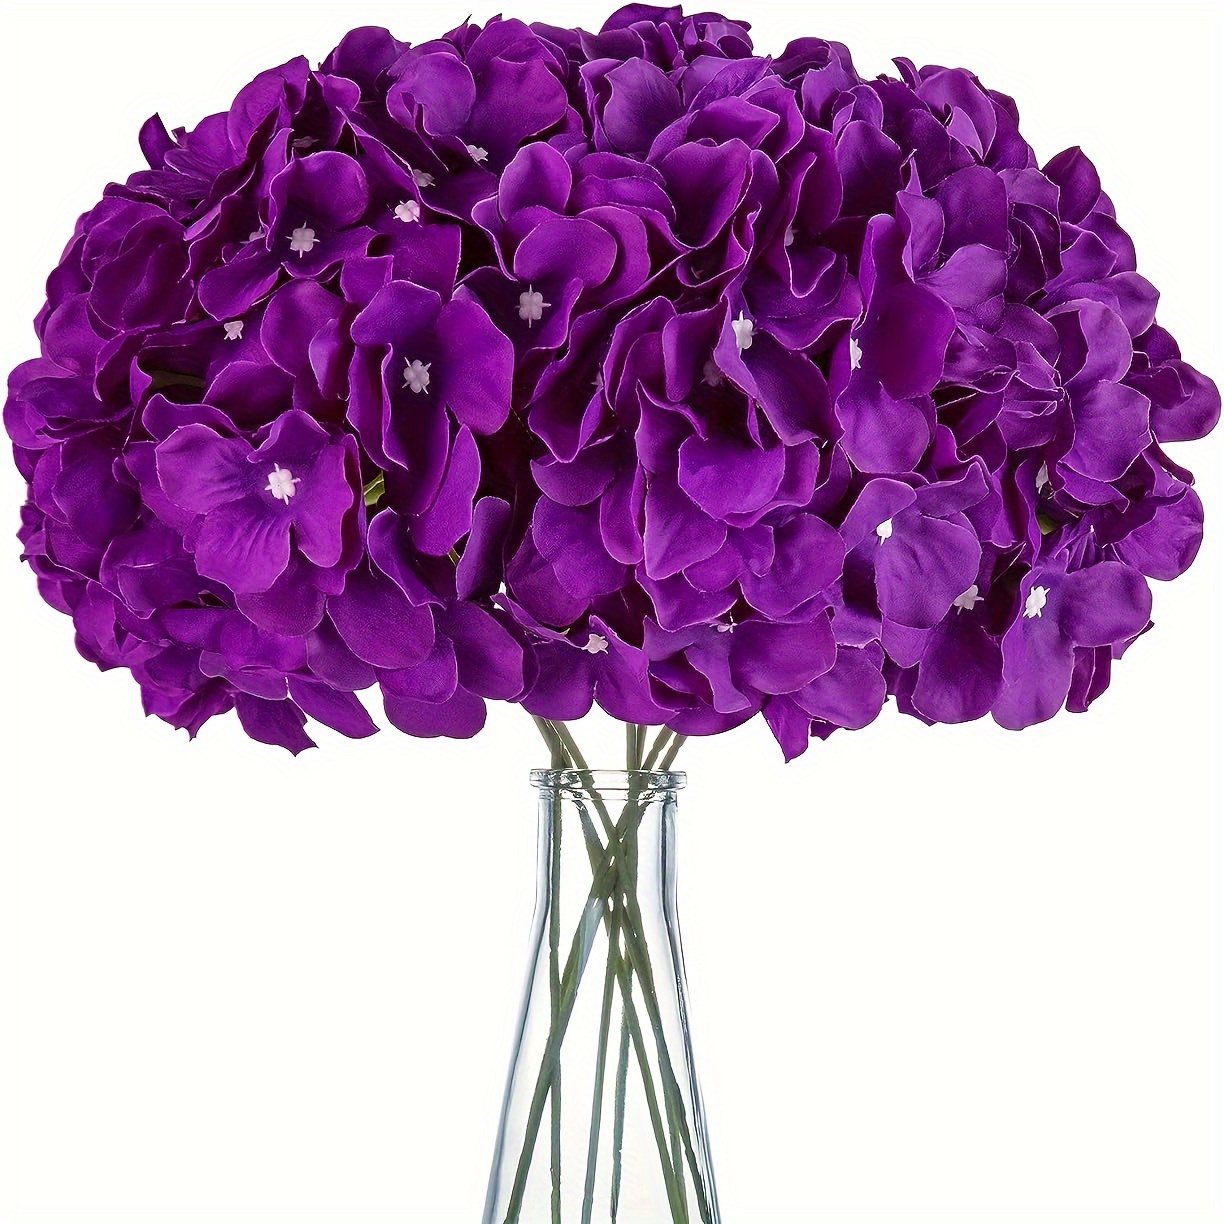 

5pcs Artificial Hydrangea Flowers, Purple Fake Hydrangeas Flower For Floral Arrangement Home Decoration Centerpiece Decor, Aesthetic Room Decor